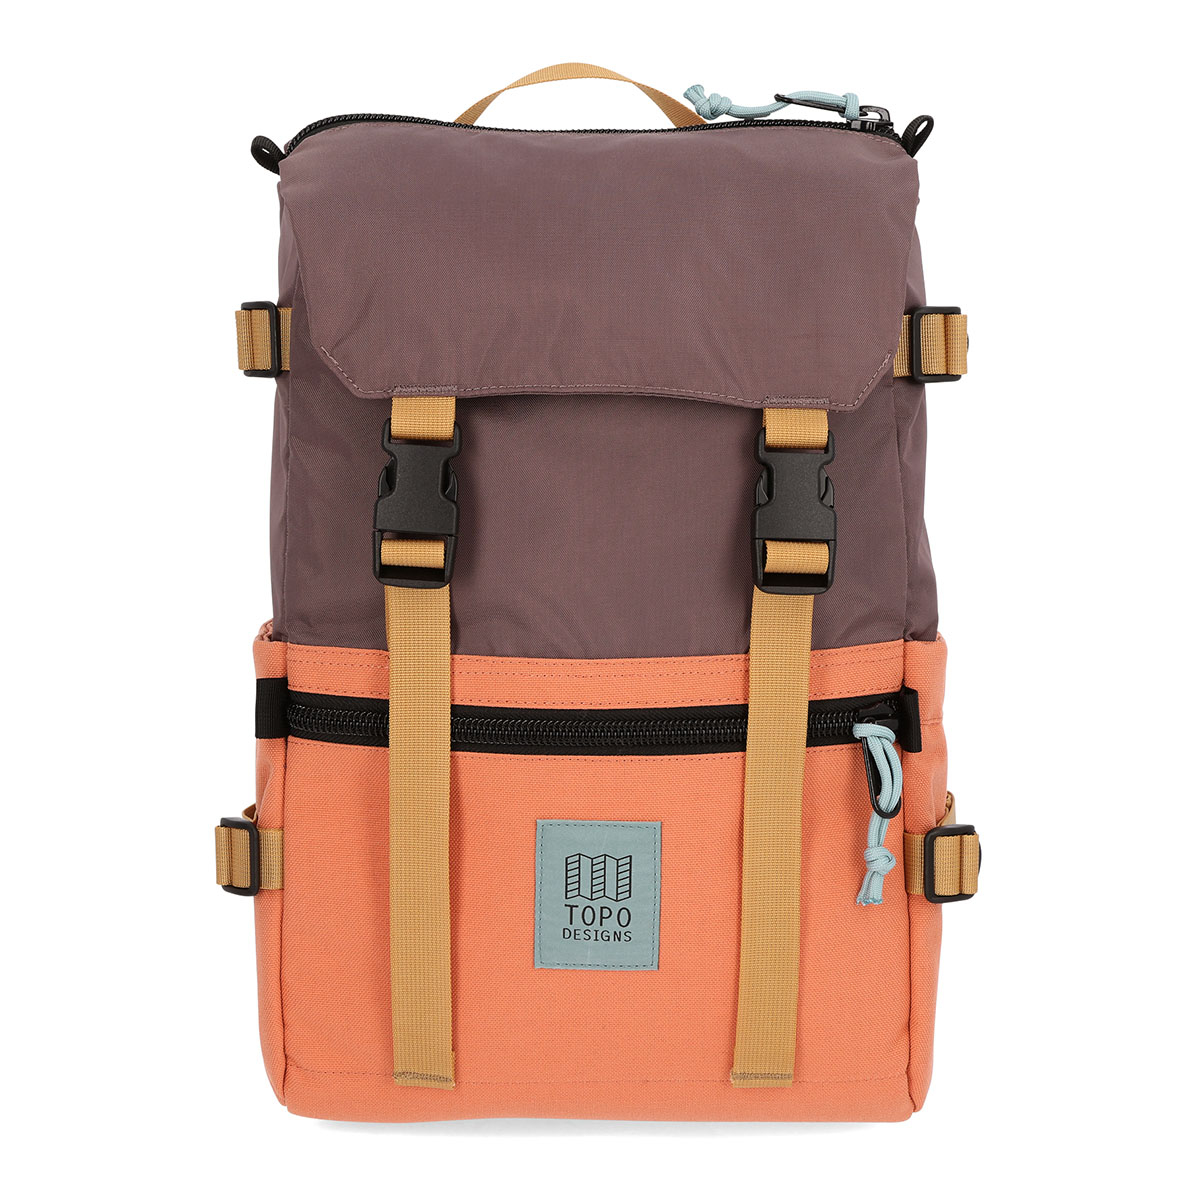 Topo Designs Rover Pack Classic Coral/Peppercorn, der ideale Rucksack für den täglichen Gebrauch